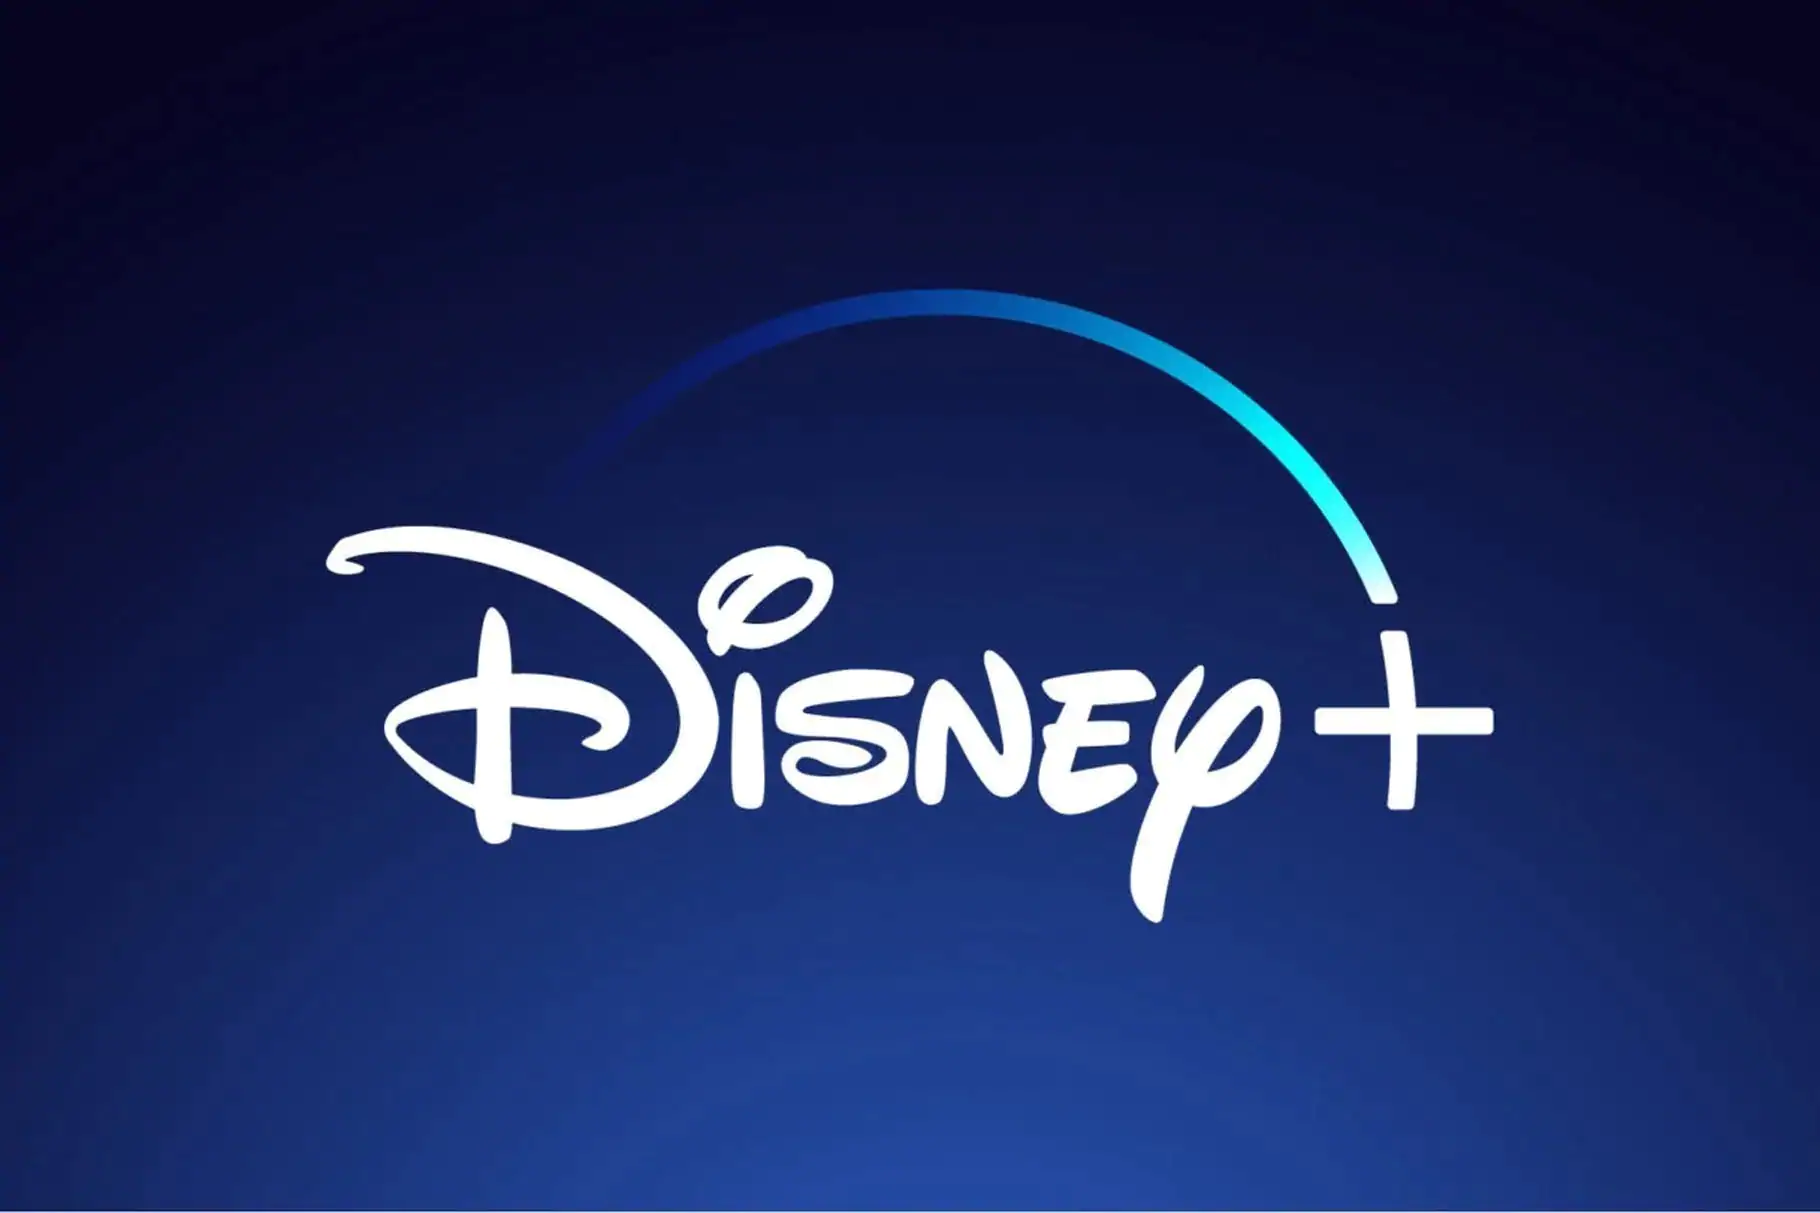 Disney+: Vorgezogener Start und finaler Preis